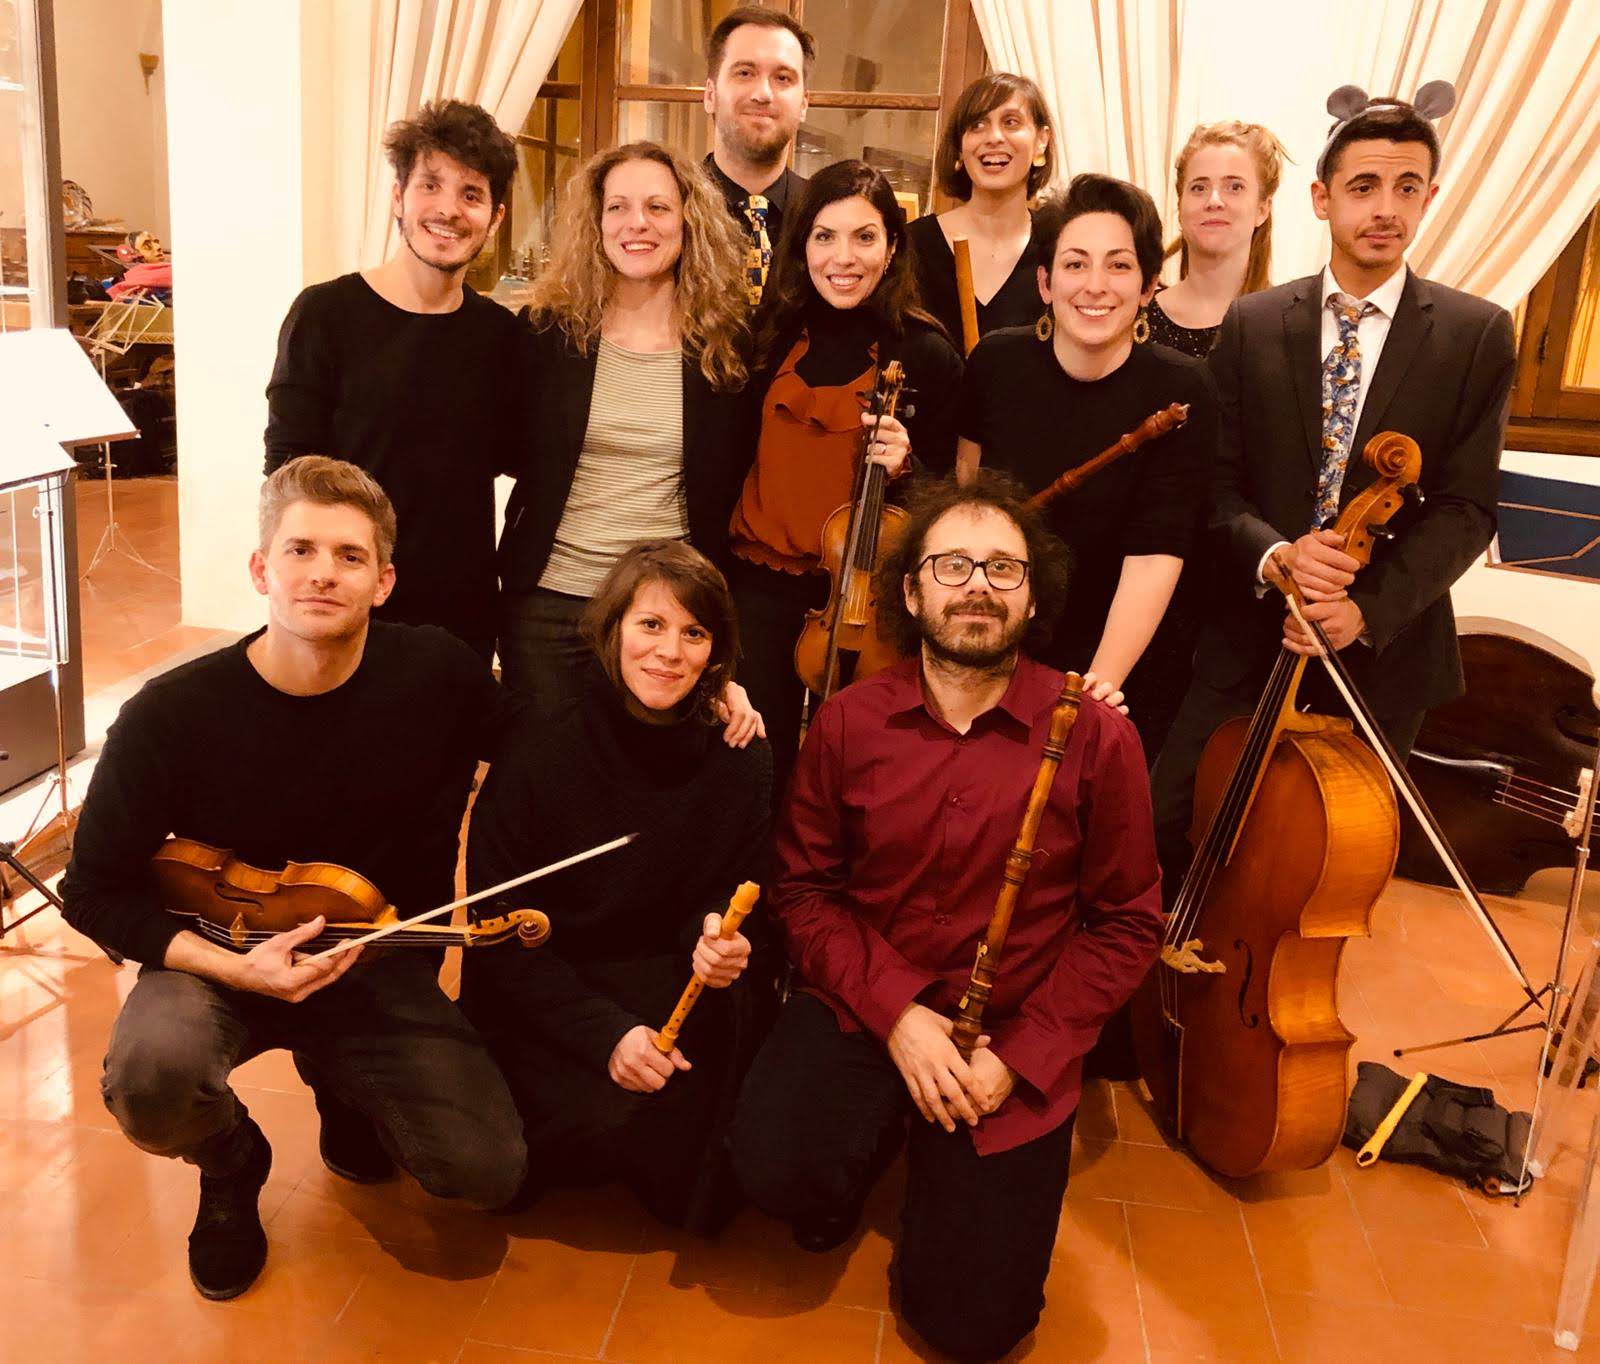 I musicisti dell’Accademia dei Broccioni in concerto a Casa Bruschi il 25 ottobre